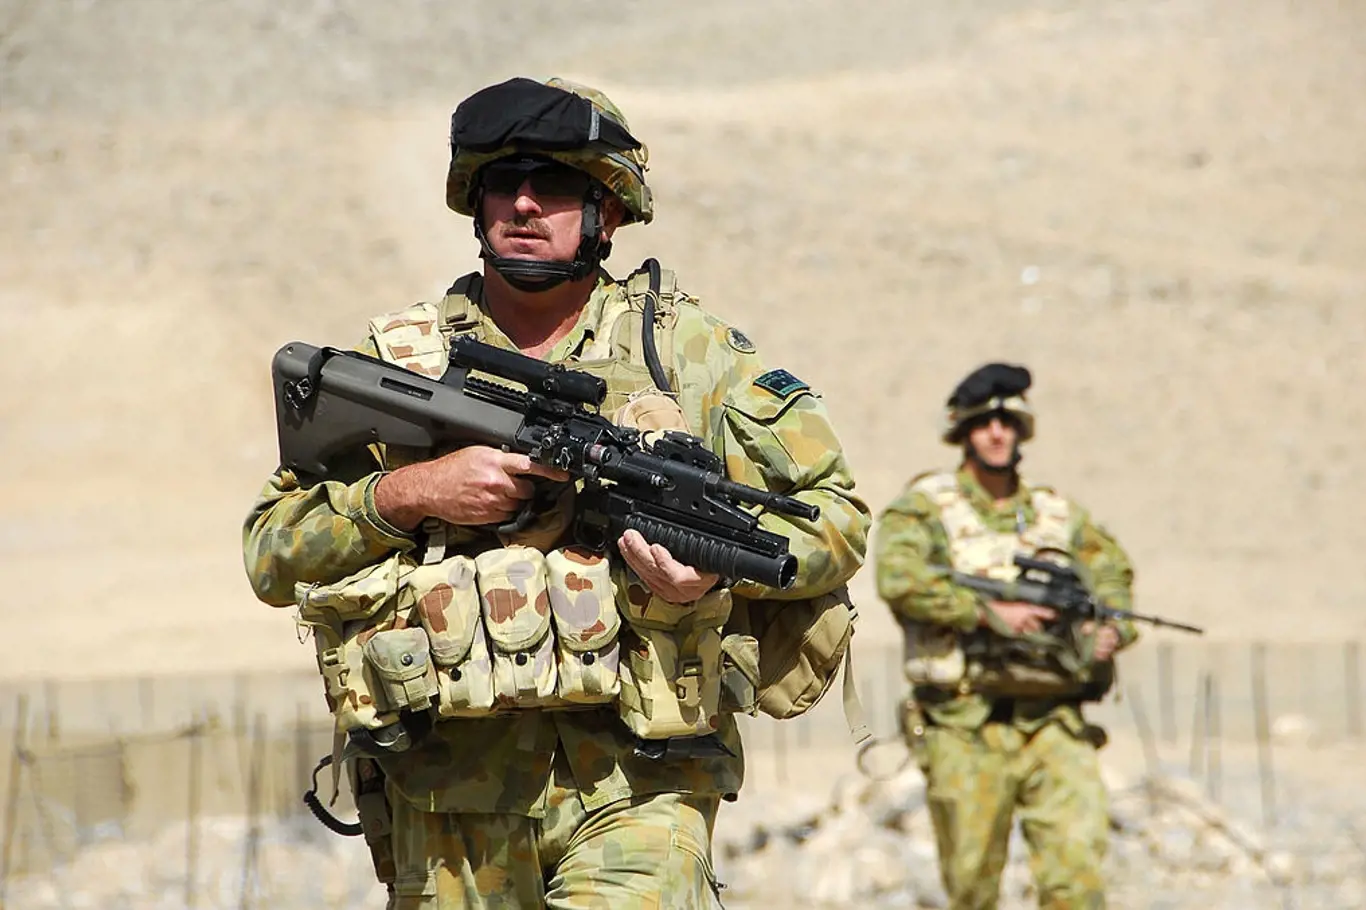 Jádrem sporu mezi australskou policií a veřejnoprávním médiem se stal postup australských jednotek v Afghánistánu